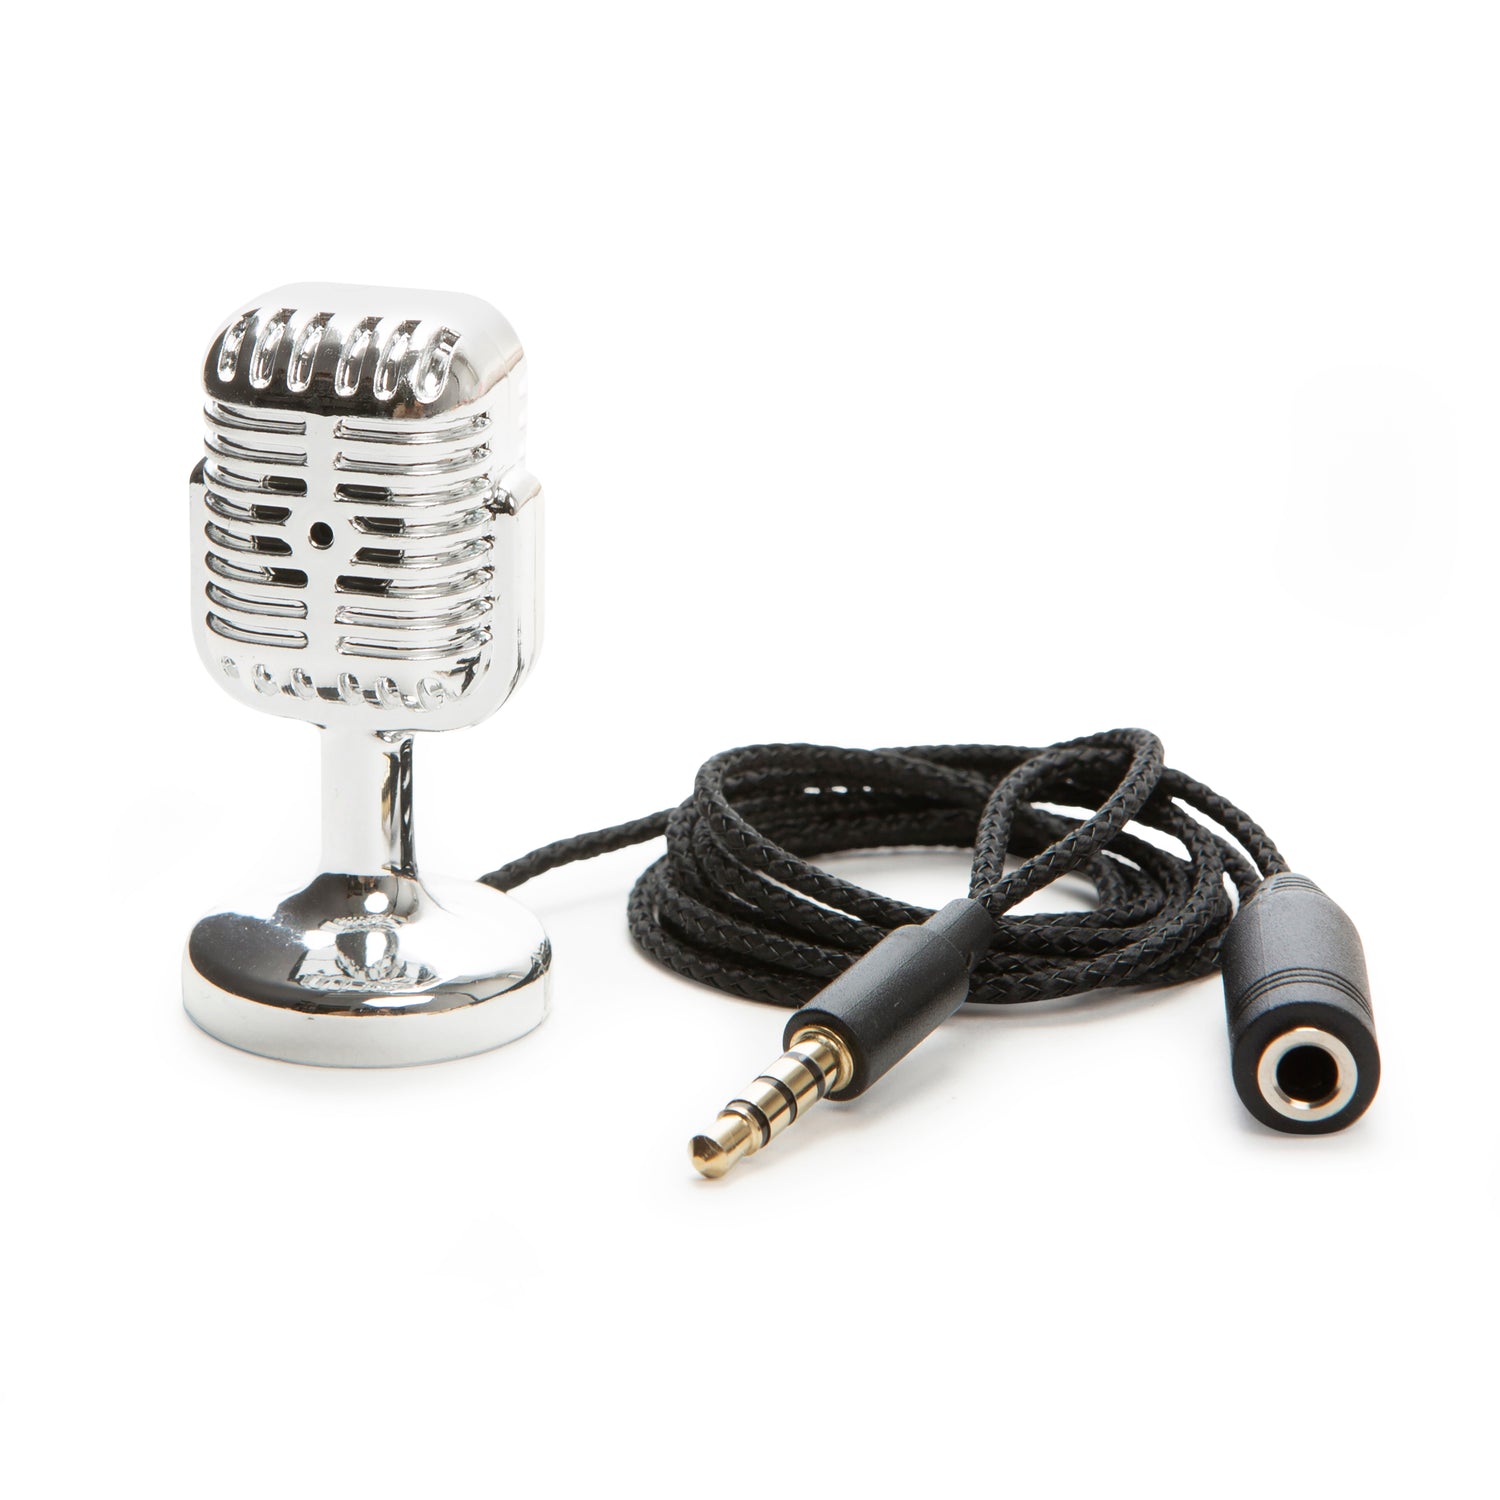 2024 mise à jour]Les 5 meilleurs microphones changeur de voix